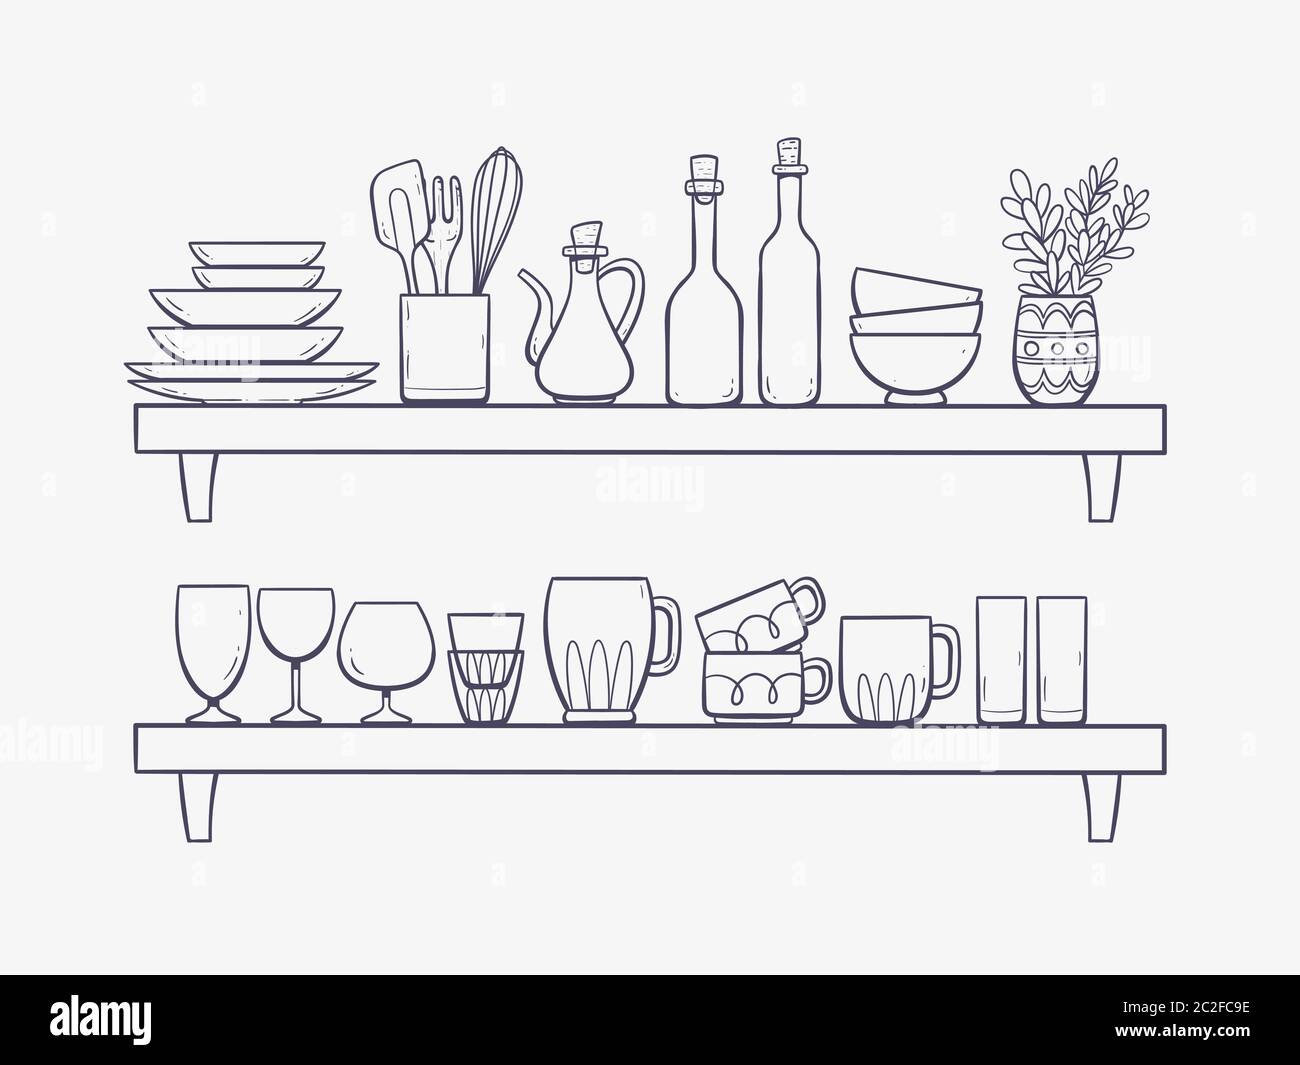 https://c8.alamy.com/compes/2c2fc9e/articulos-de-cocina-en-estantes-dos-estantes-con-cuencos-botellas-un-oilcan-vasos-tazas-y-otros-utensilios-de-cocina-ilustracion-de-vector-dibujado-a-mano-aislada-2c2fc9e.jpg